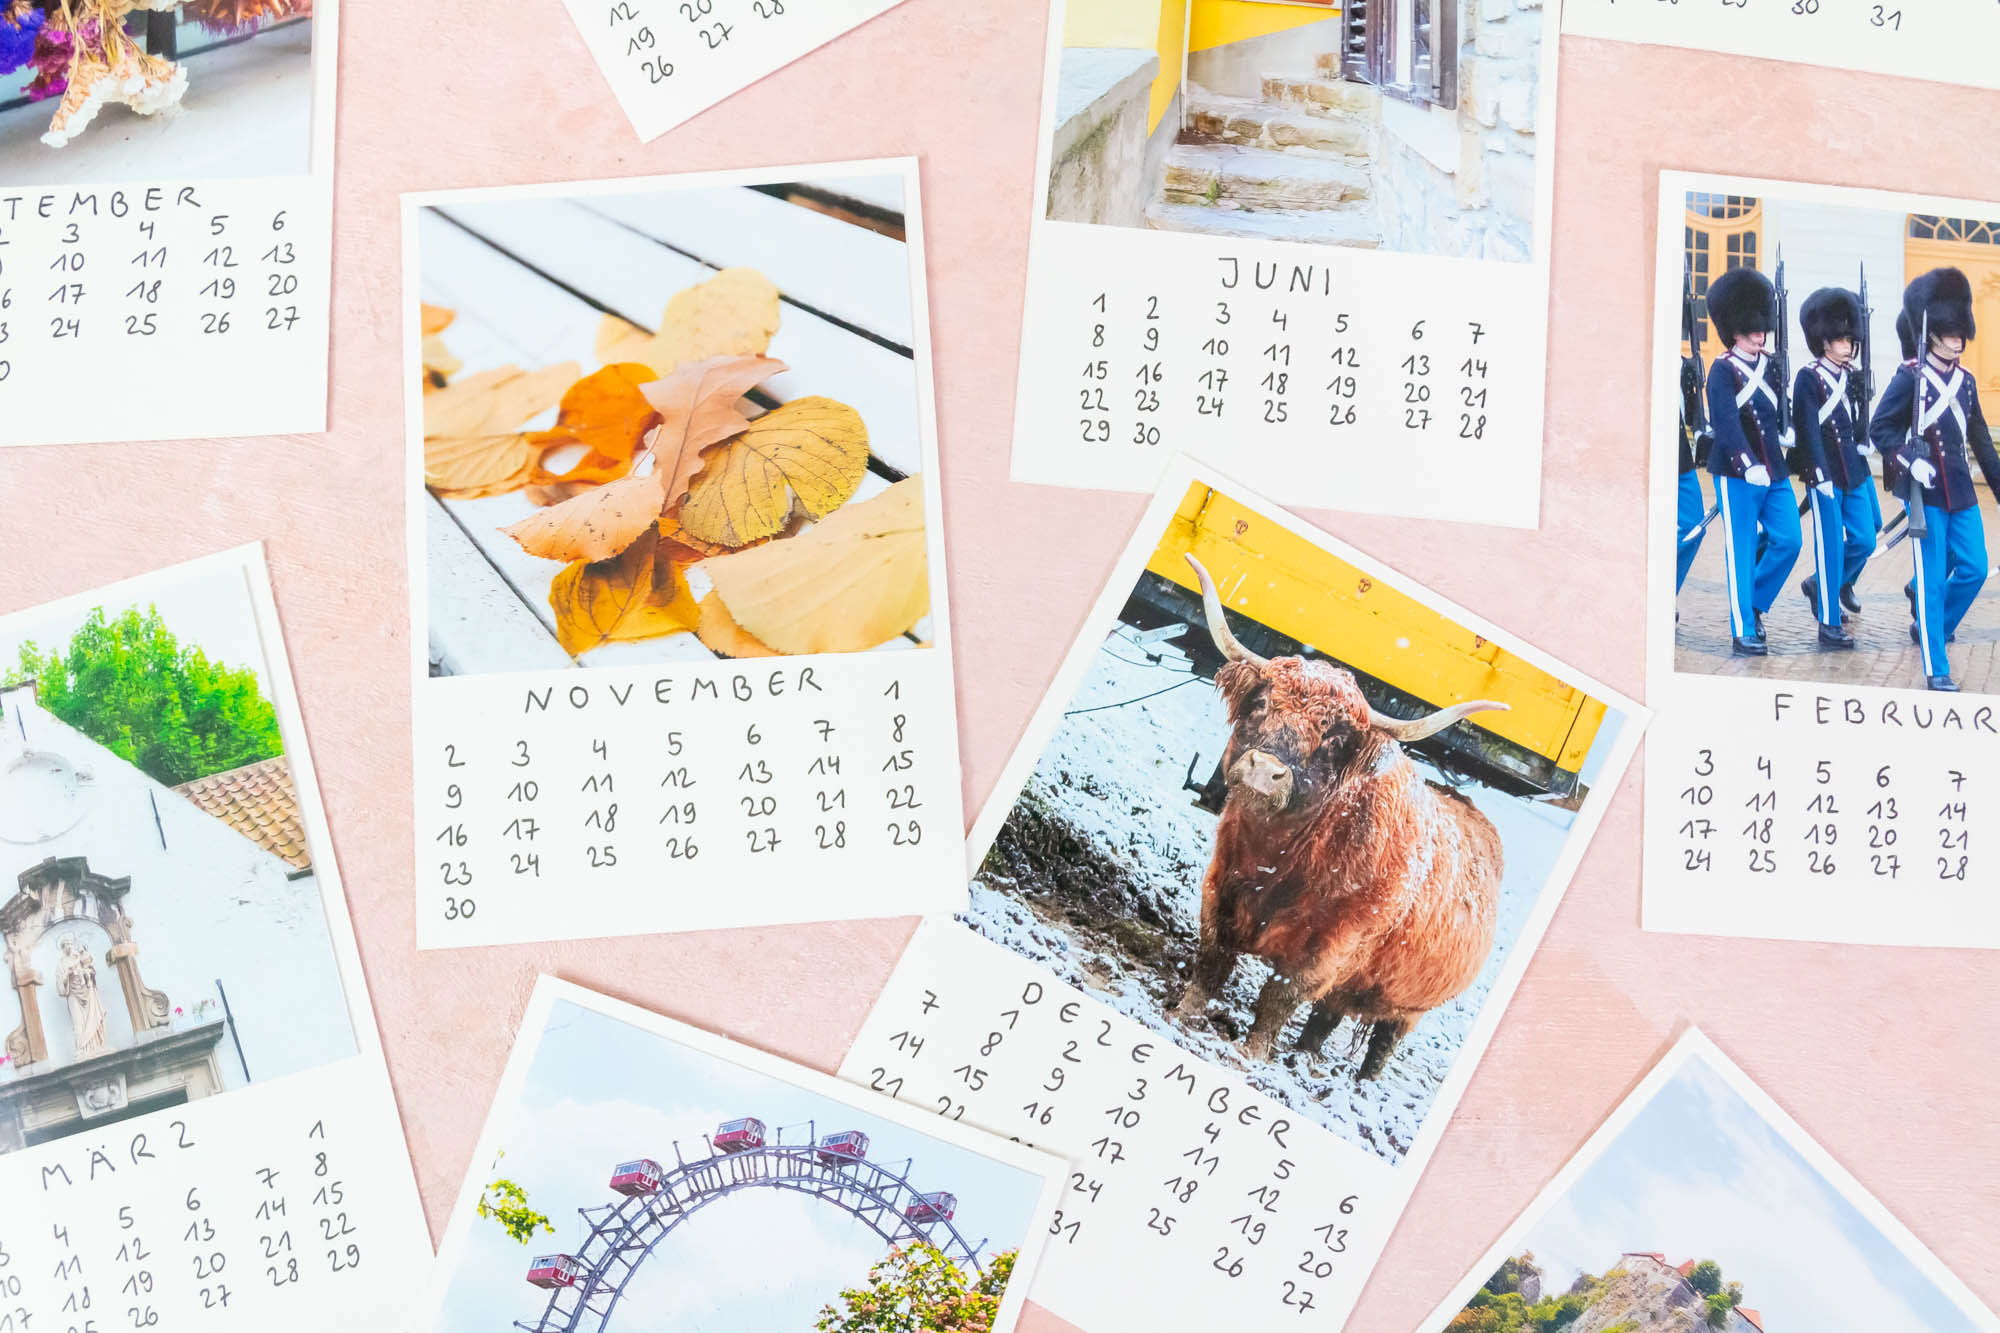 DIY Foto Kalender basteln mit fake Polaroid Bildern 